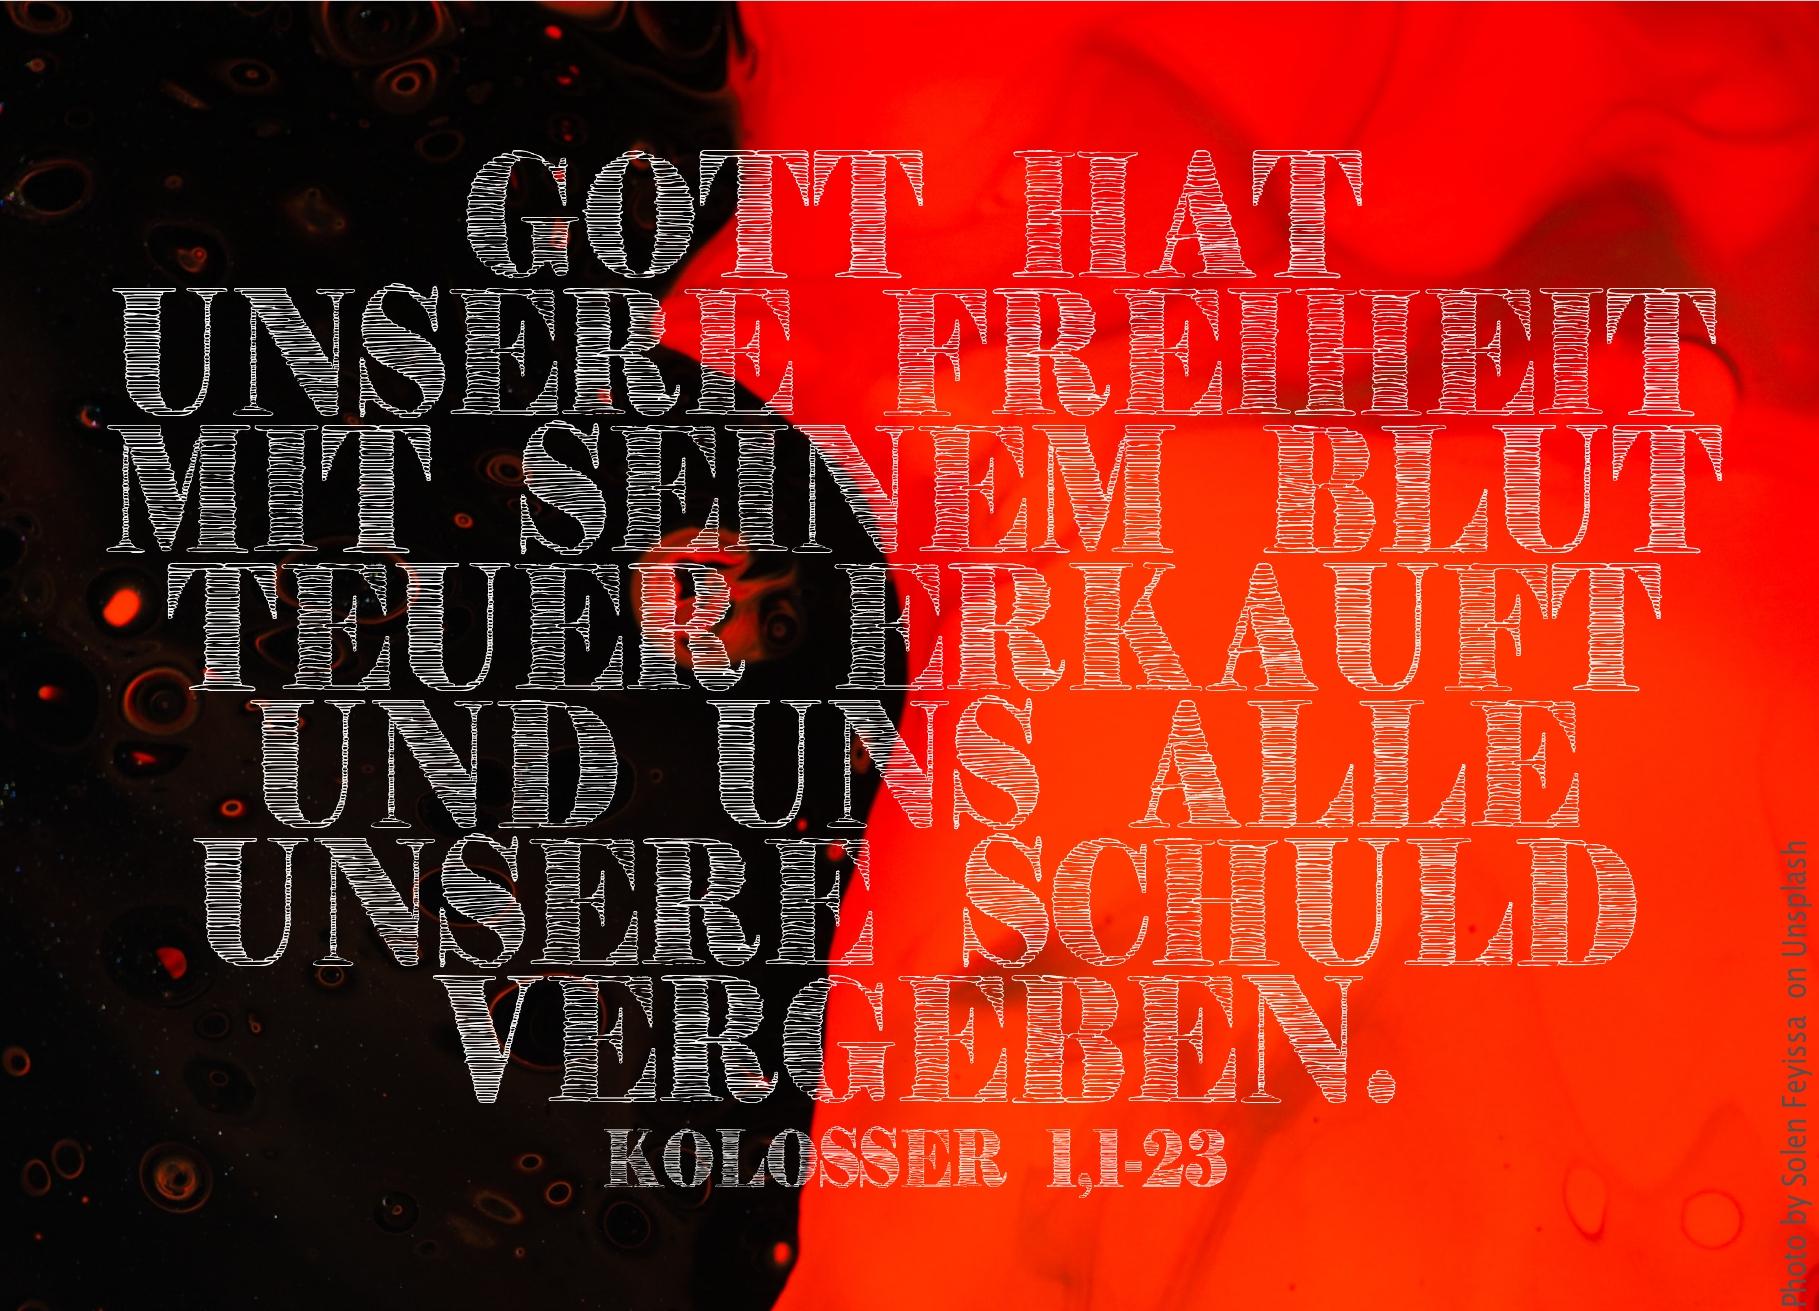 alt="schwarz-roter-hintergrund_erwartet_bibelhoerbuch_freiheit_fuer_jerusalem"